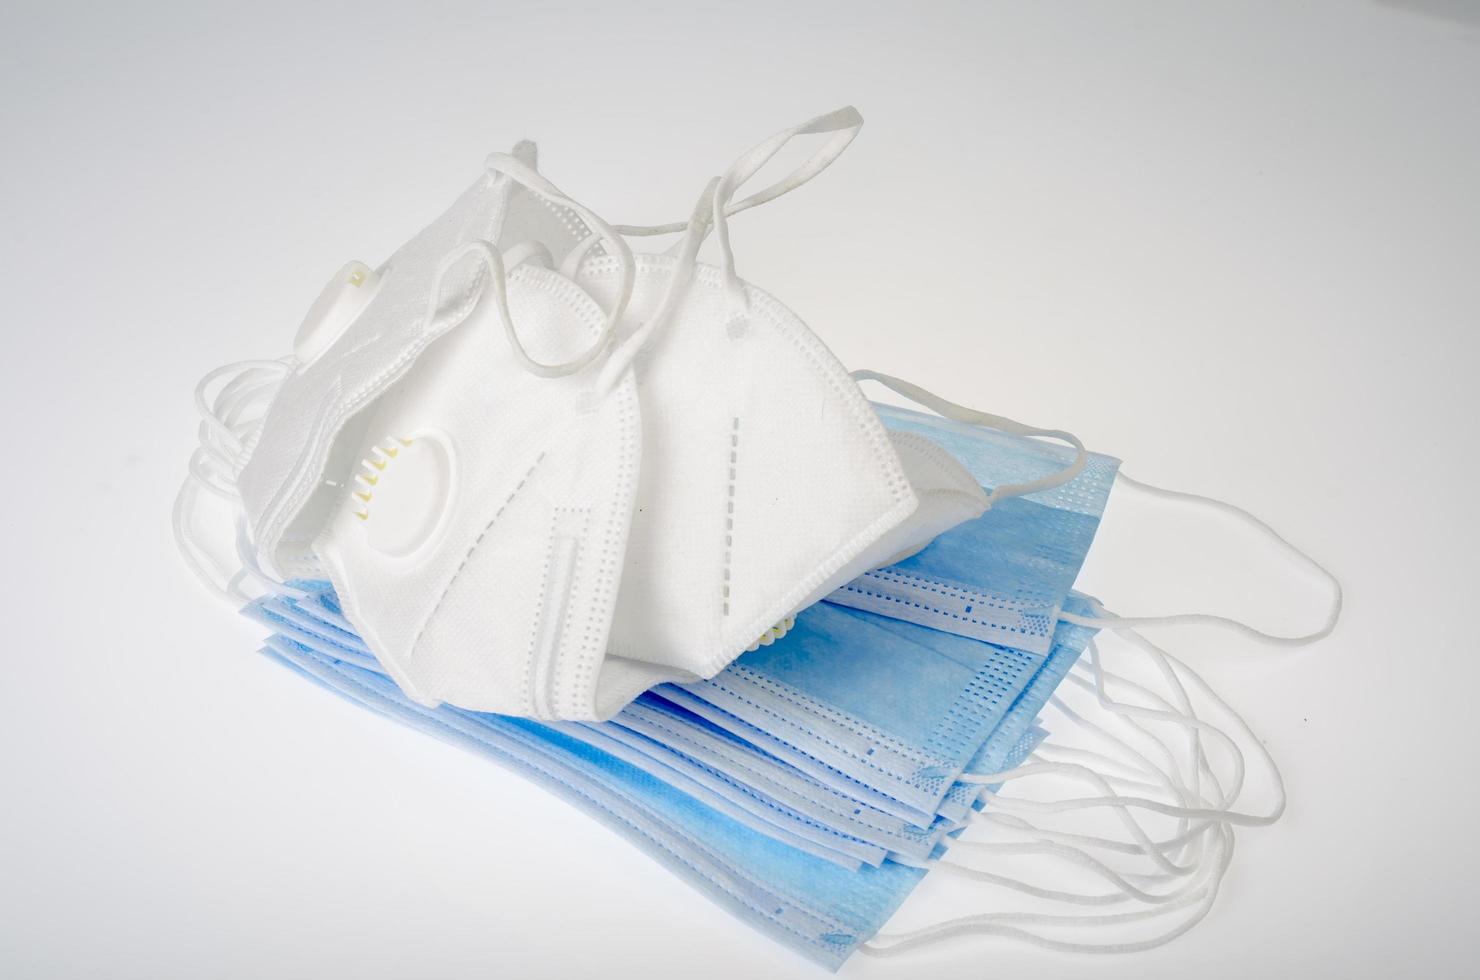 blauwe medische wegwerpmaskers en witte ademhalingstoestellen - bescherming tegen coronavirus foto